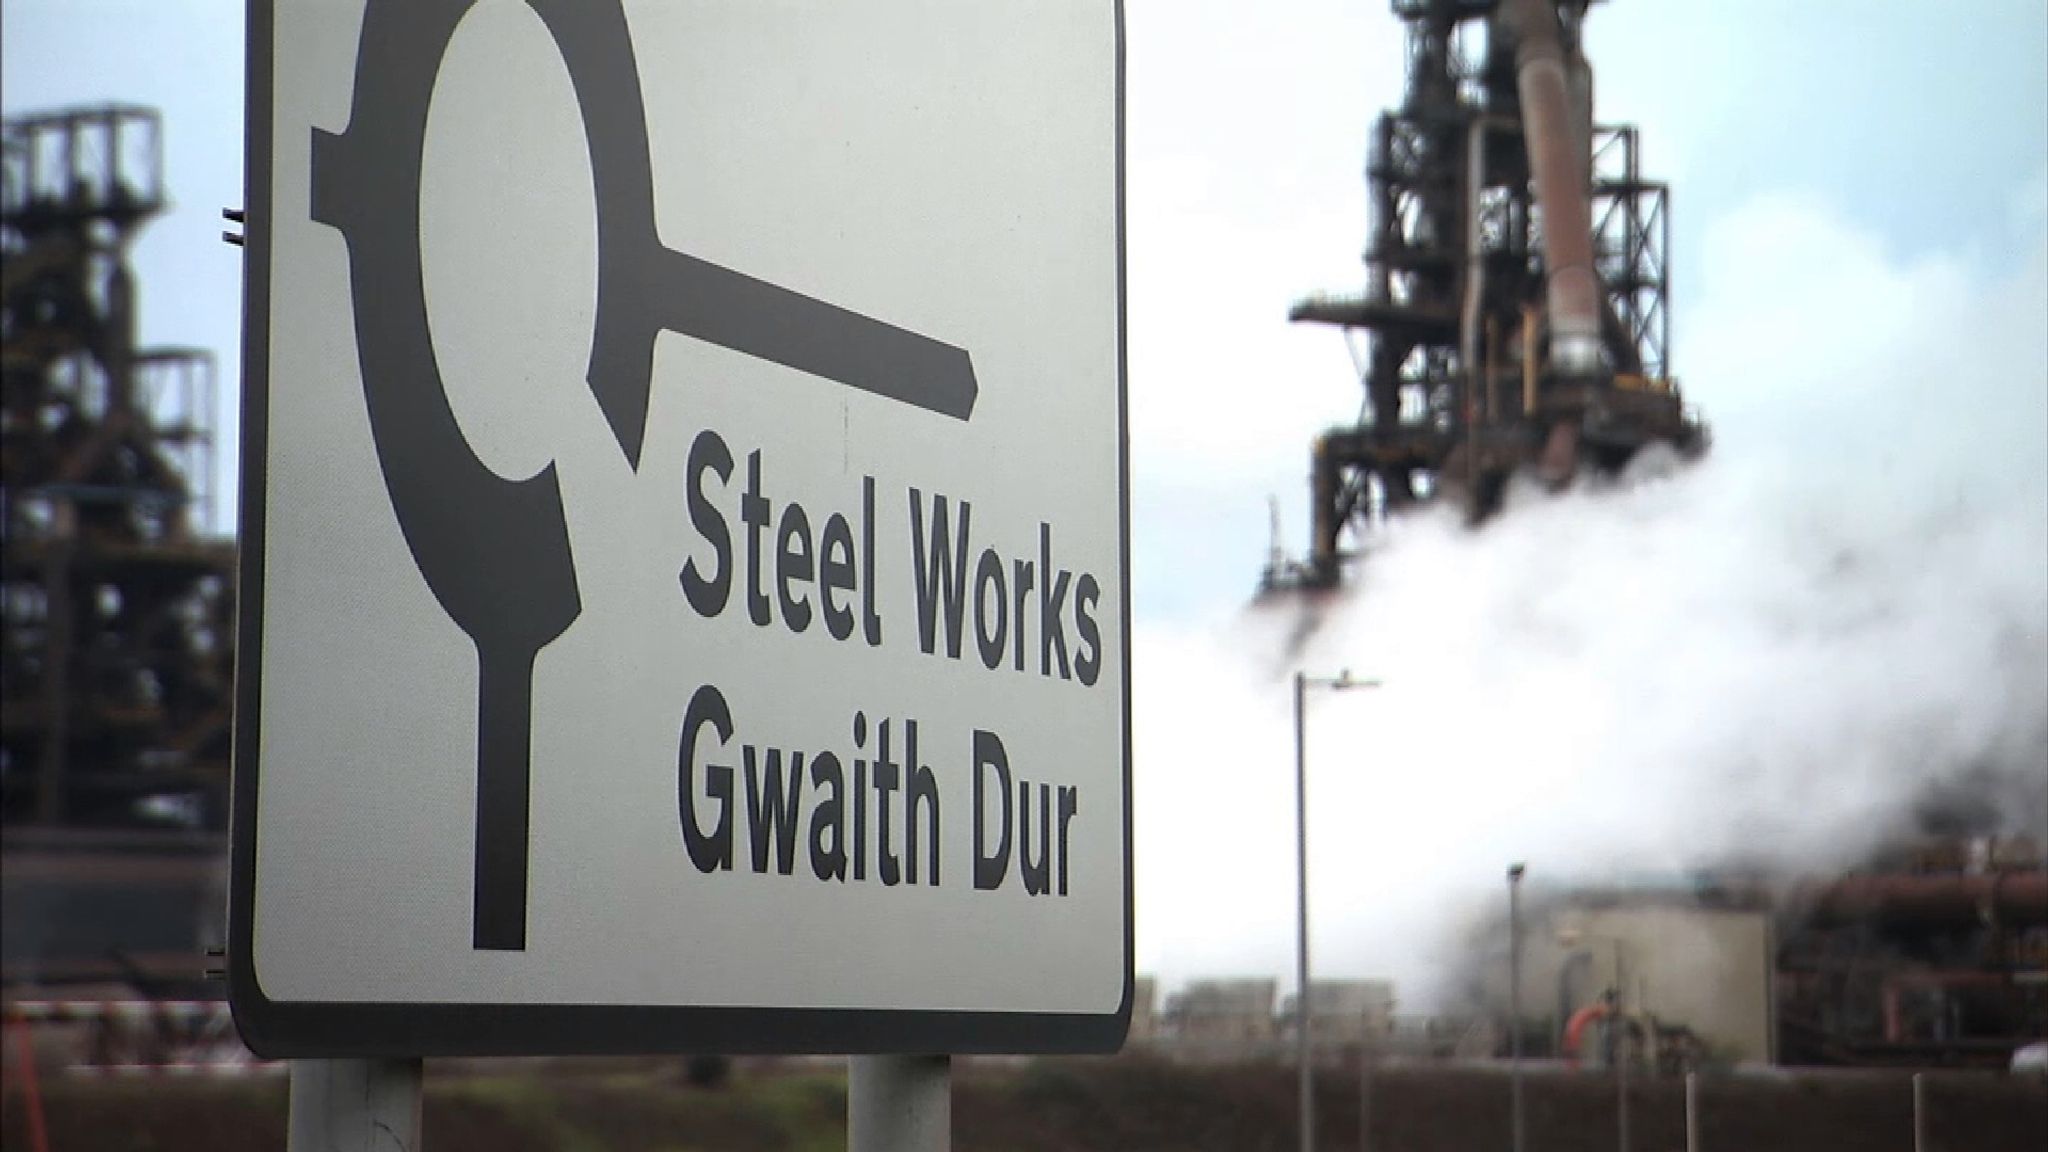 Thyssenkrupp e Tata Steel anunciam fusão de operações na Europa